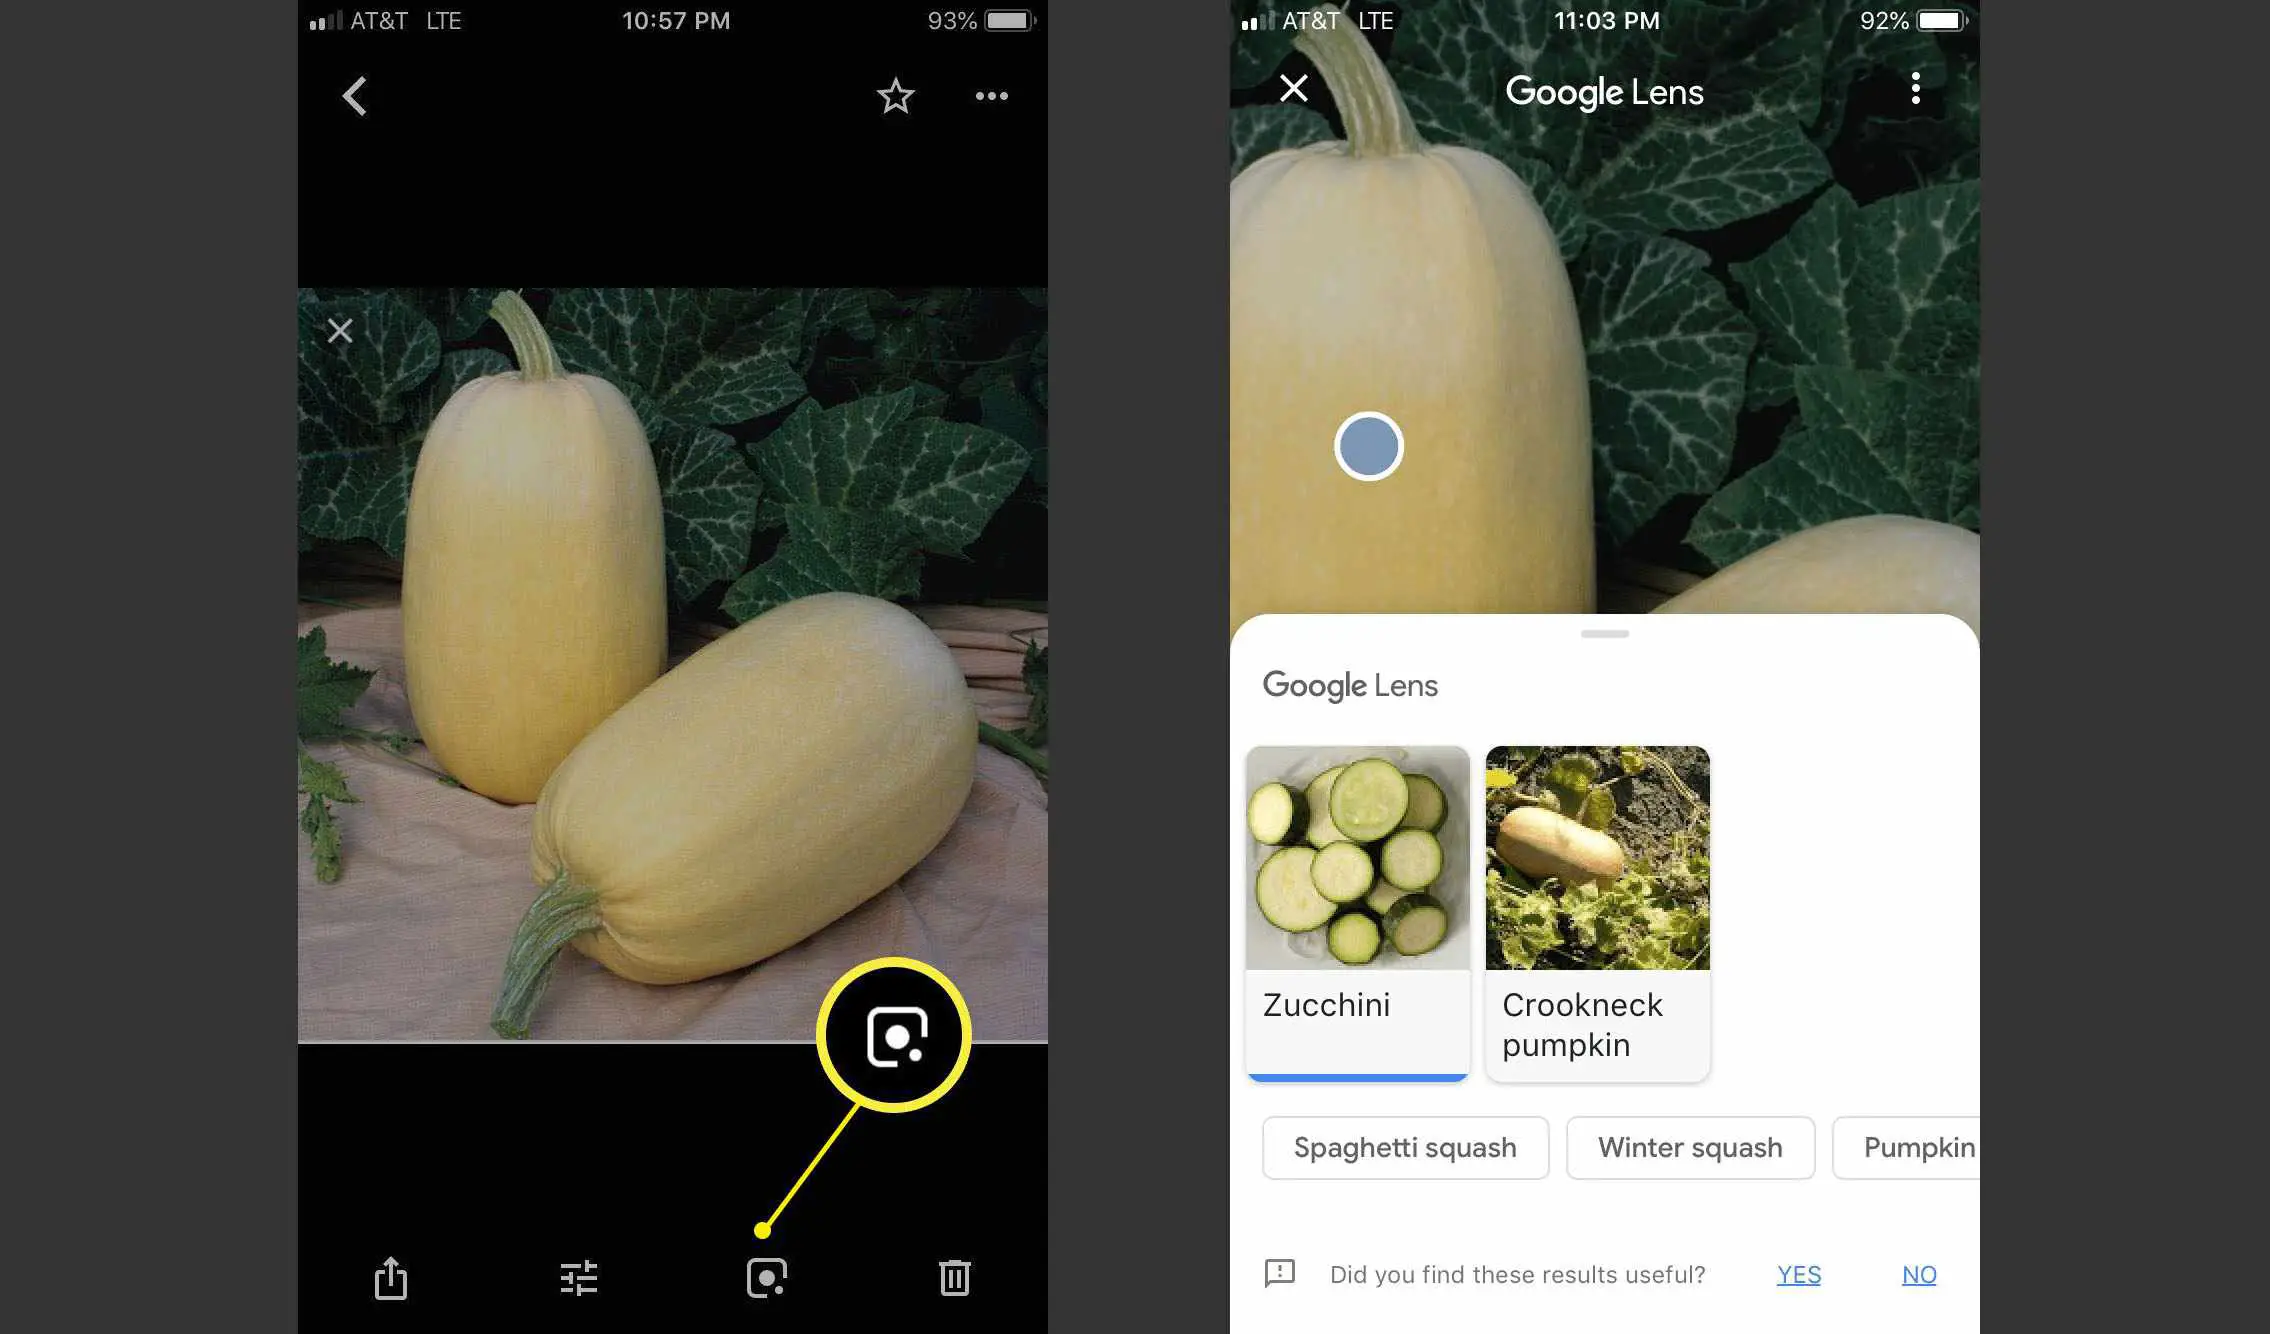 Captura de tela mostrando mais detalhes do Google Lens na foto de abóbora espaguete